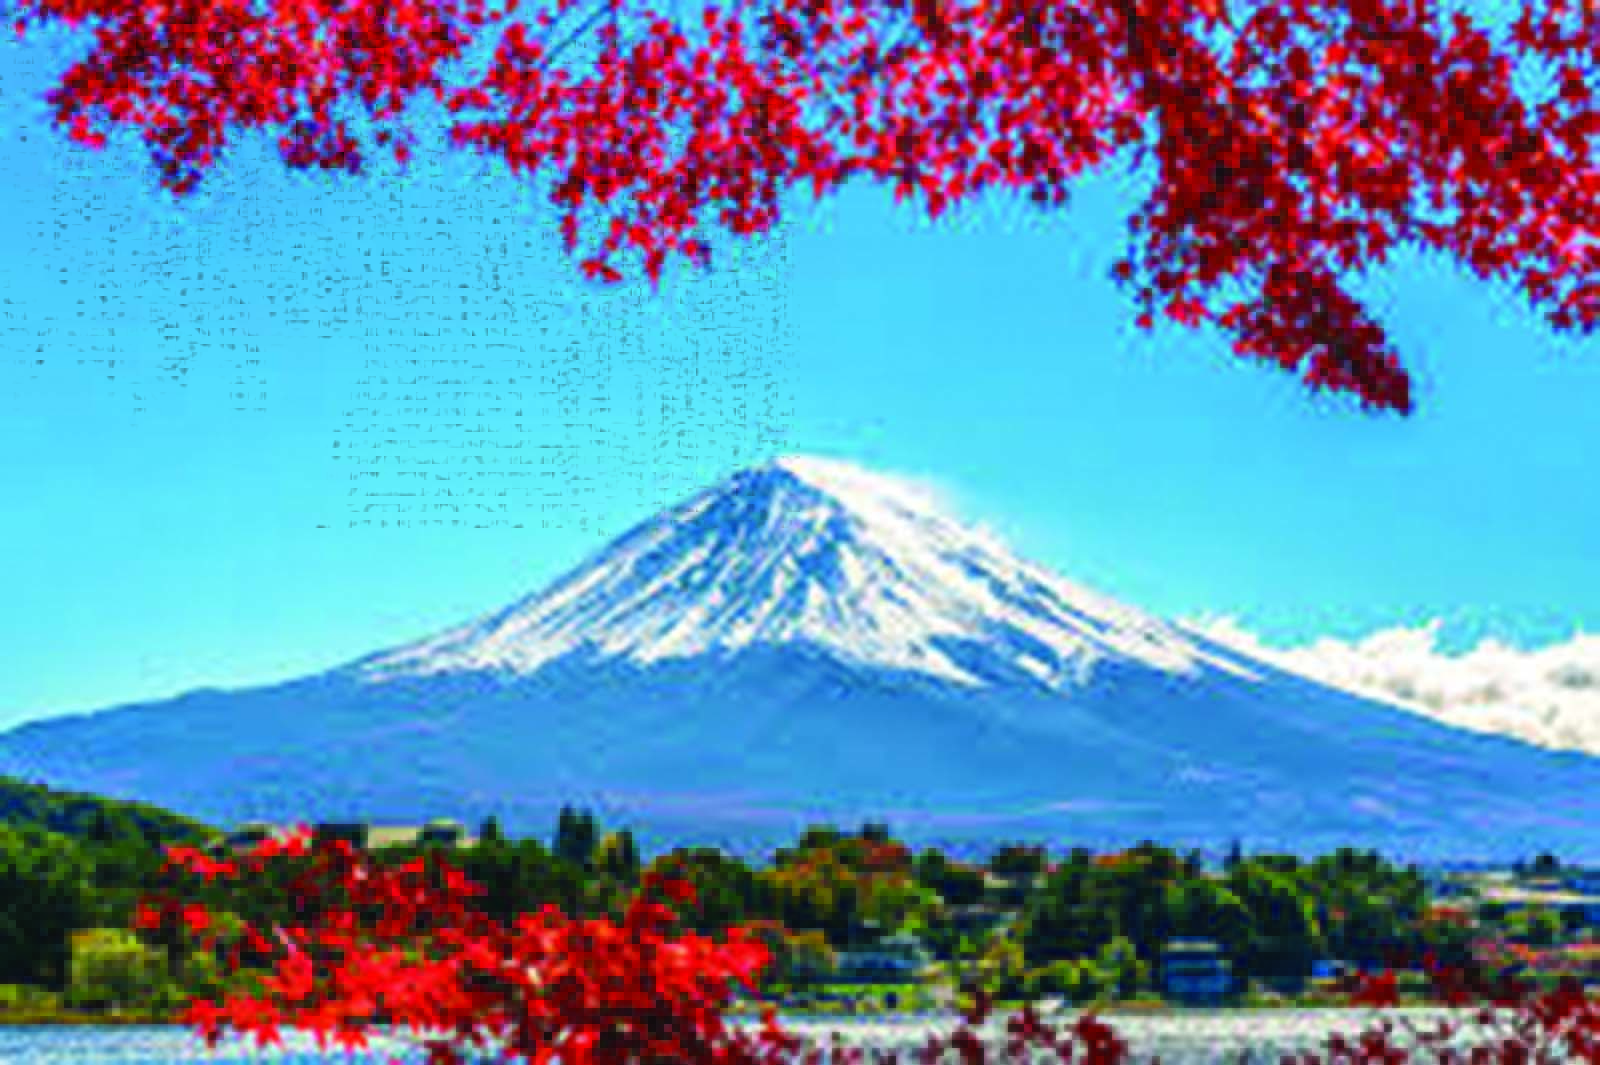 Eksplorasi Mendalam dan Mengungkap Keajaiban Jepang dari Utara ke Selatan